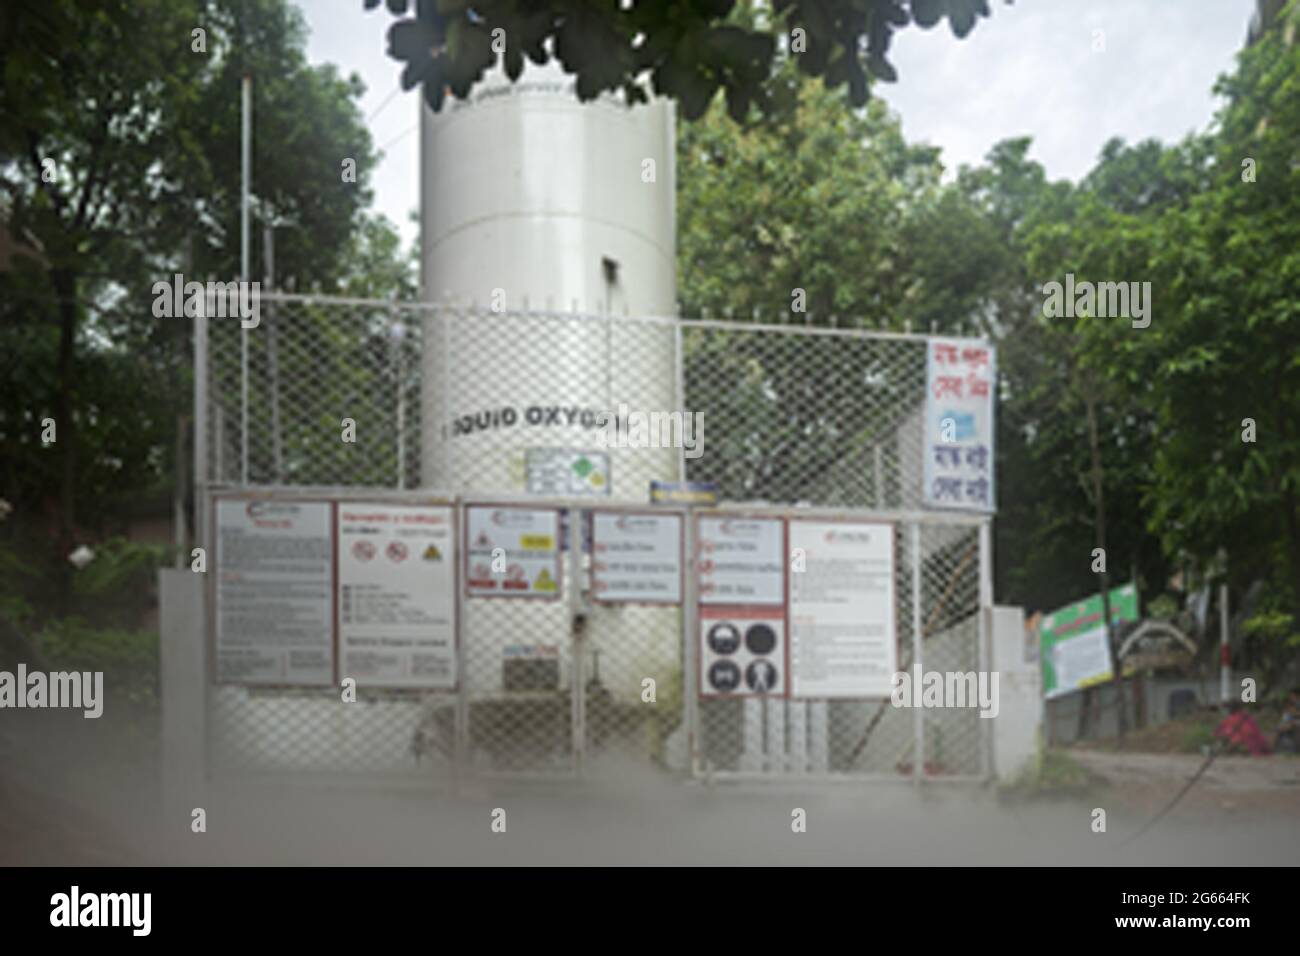 3 de julio de 2021, Chittagong, Bangladesh: El gobierno de Bangladesh instalará tanques centrales de oxígeno o evaporadores aislados por vacío (VIES) en 26 hospitales que atienden a pacientes de Covid-19 en todo el país. Tras la instalación, los VIES garantizarán un suministro ininterrumpido de oxígeno a unos 12.000 pacientes con coronavirus sin necesidad de bombonas.Bajo la supervisión del Taller Nacional de Mantenimiento de Equipos Electromédicos (NEMEMW), LINDE Bangladesh y Spectra International Ltd instalarán los VIES en 13 hospitales cada uno, con un costo de CT. 45.590.000. (Imagen de crédito: © Subrata Dey/ZUM Foto de stock